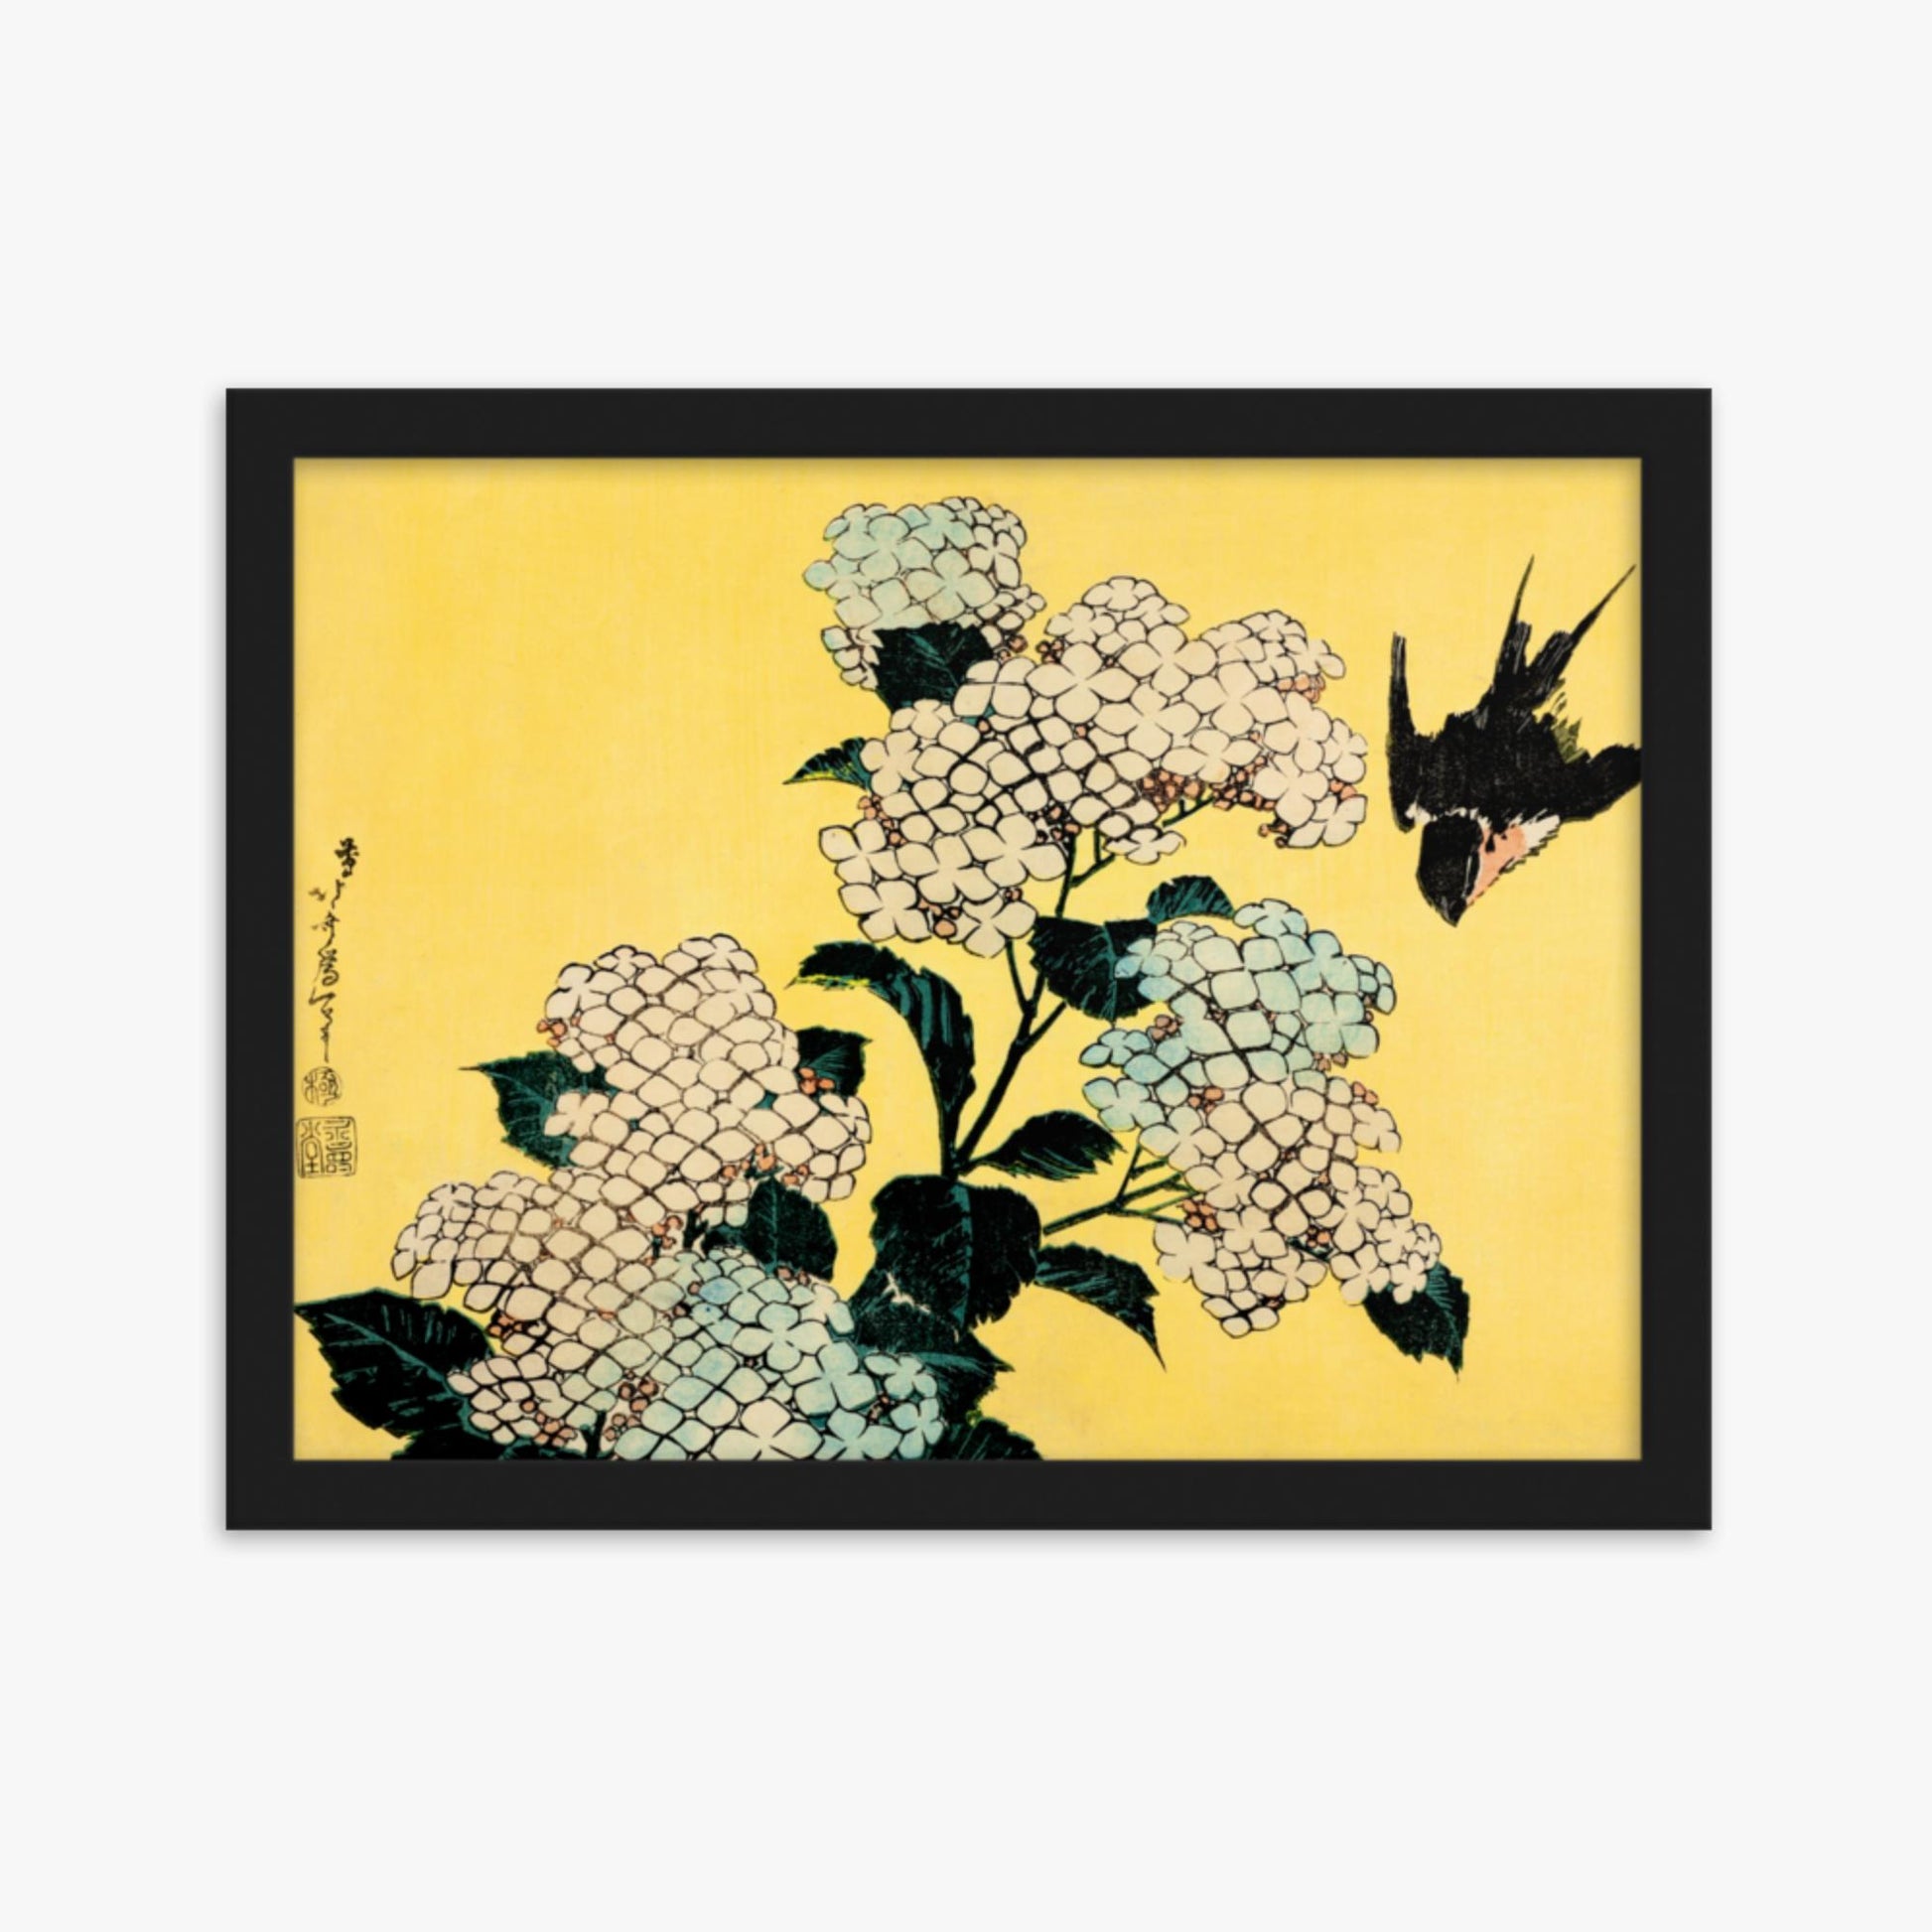 Katsushika Hokusai - Hydrangea and Swallow 30x40 cm Poster With Black Frame